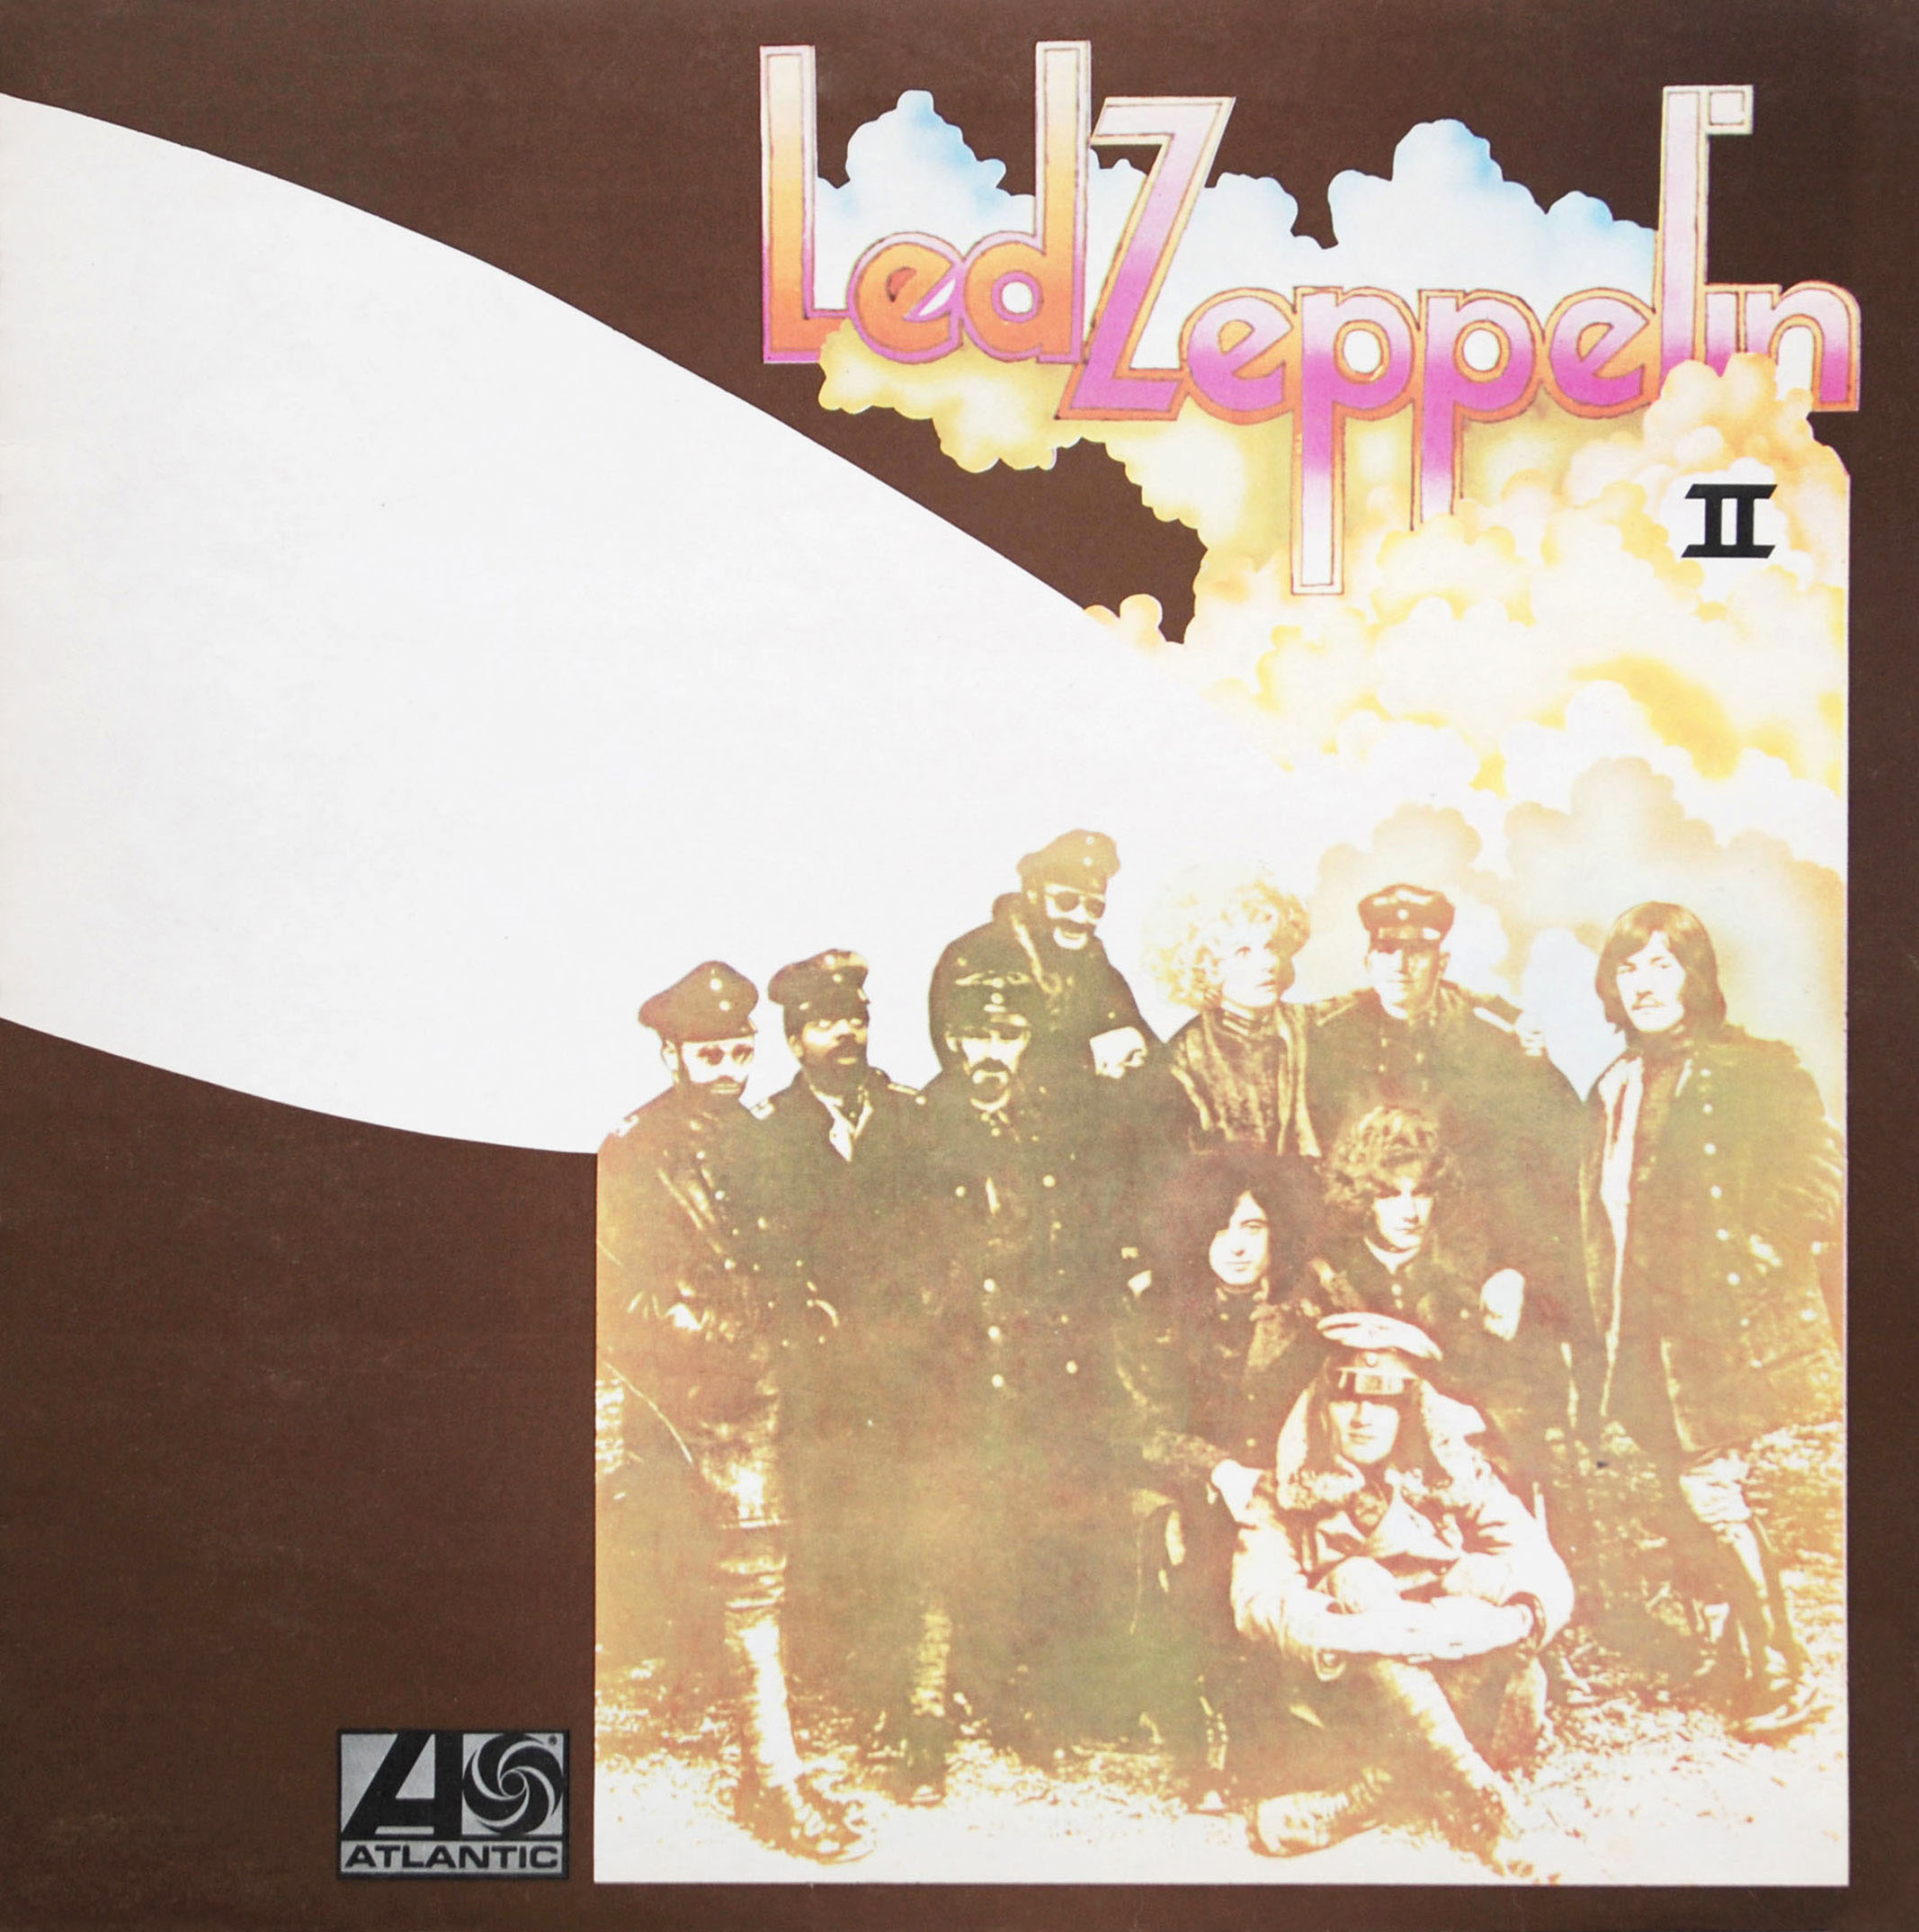 Led Zeppelin – II album art - Fonts In Use